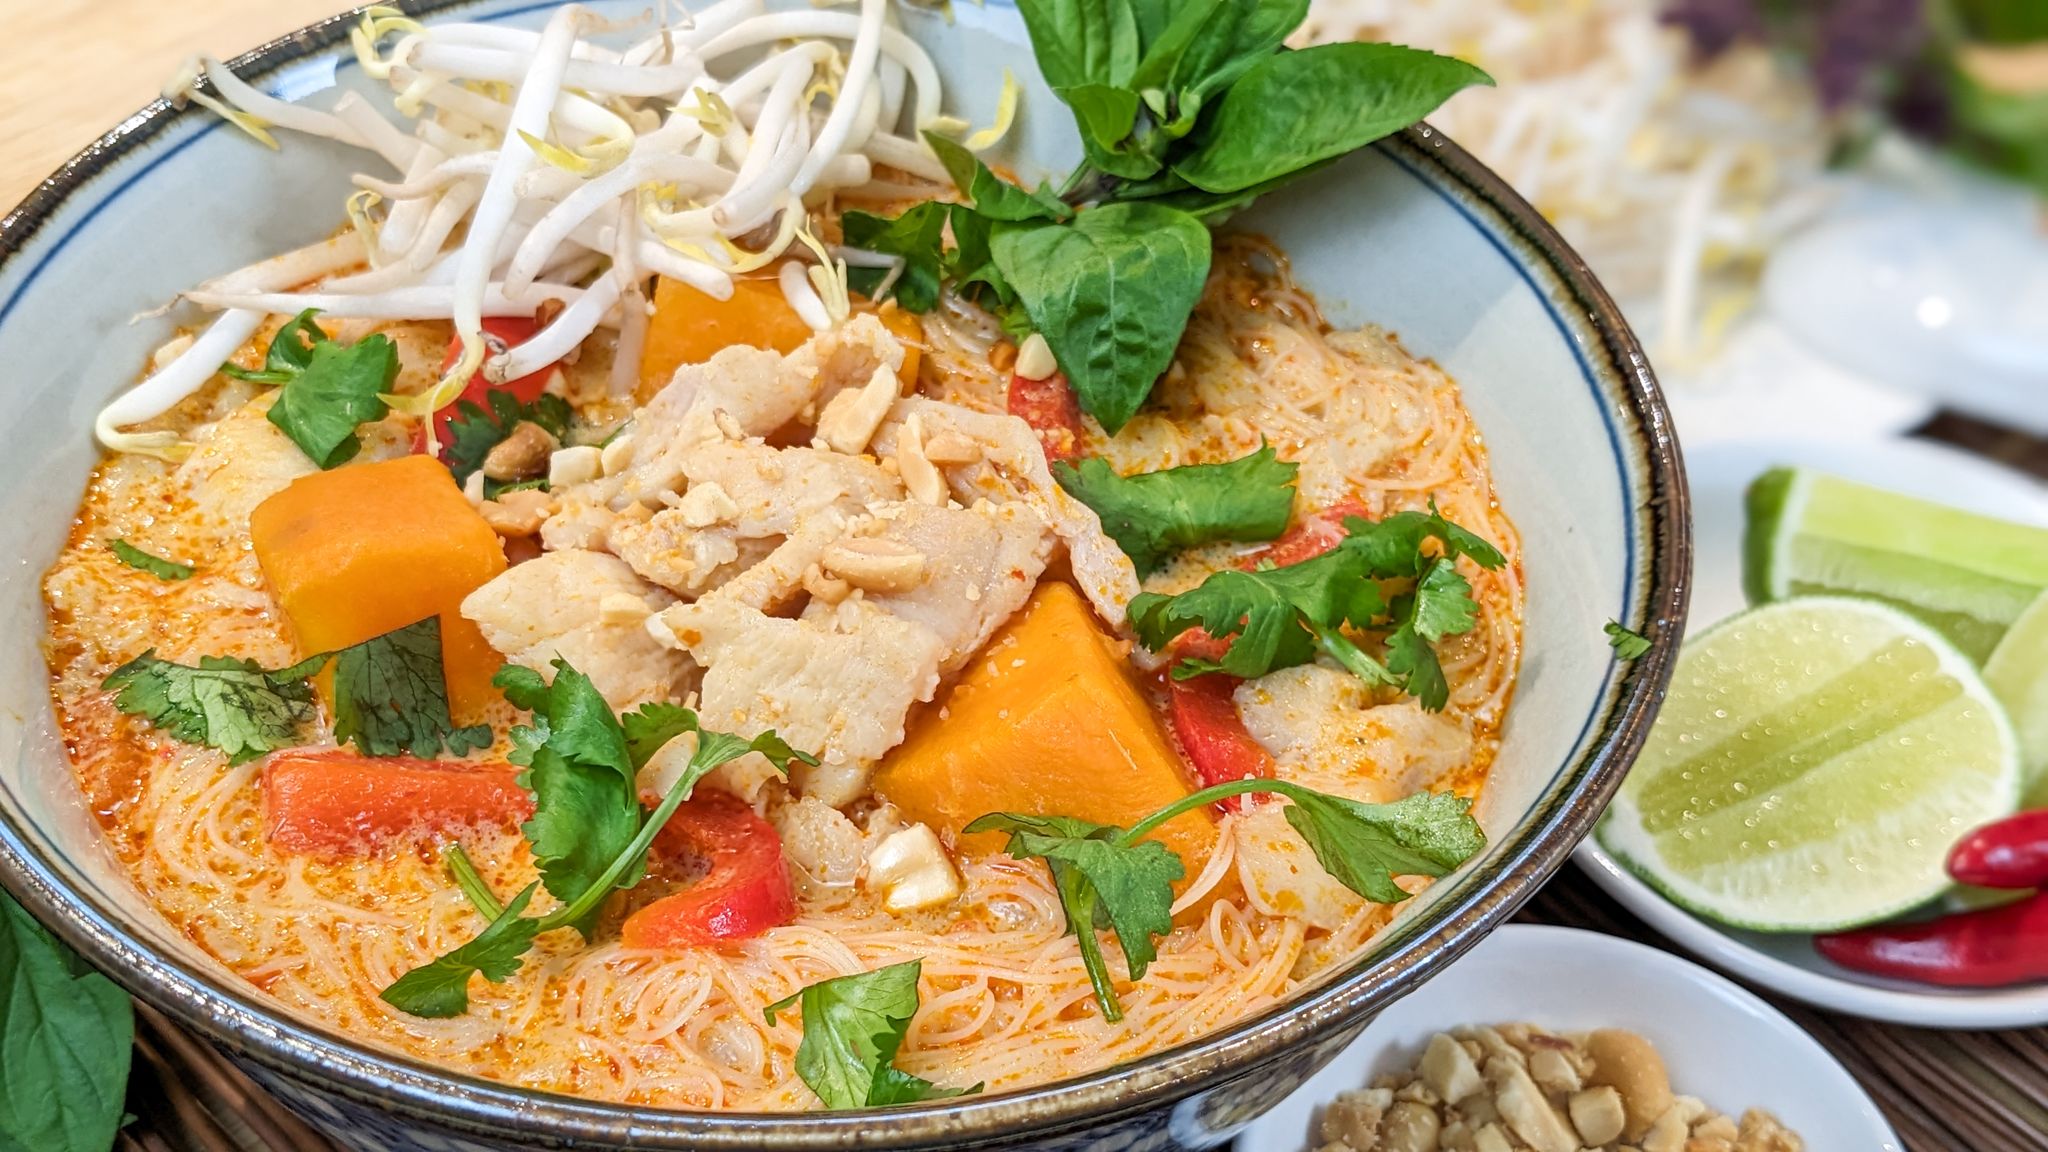 Soupe thaï au curry rouge et lait de coco - Hop dans le wok